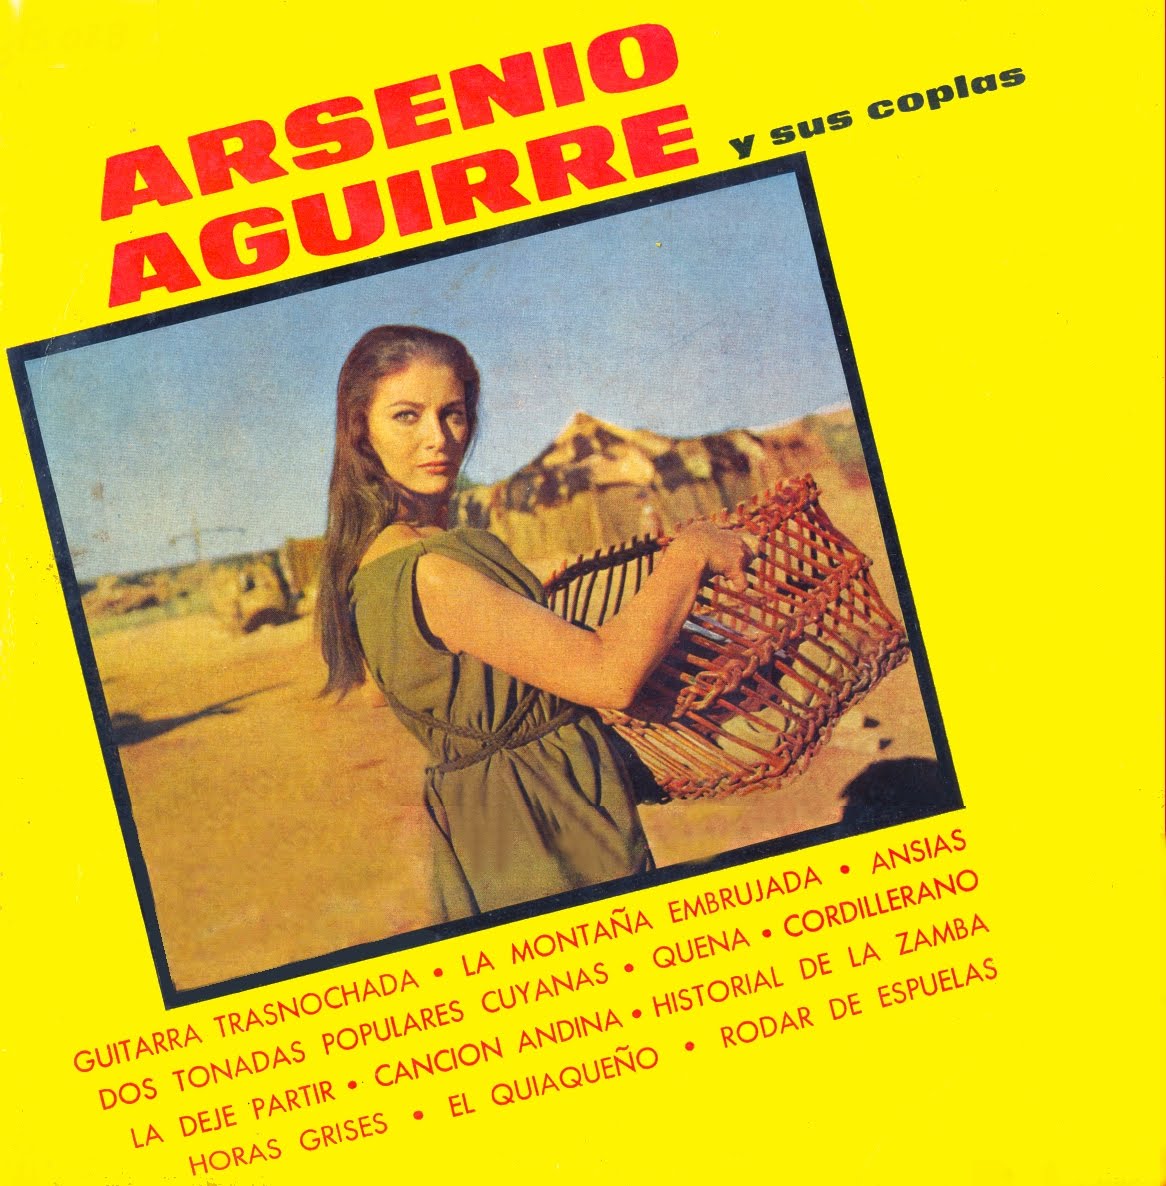 Arsenio Aguirre